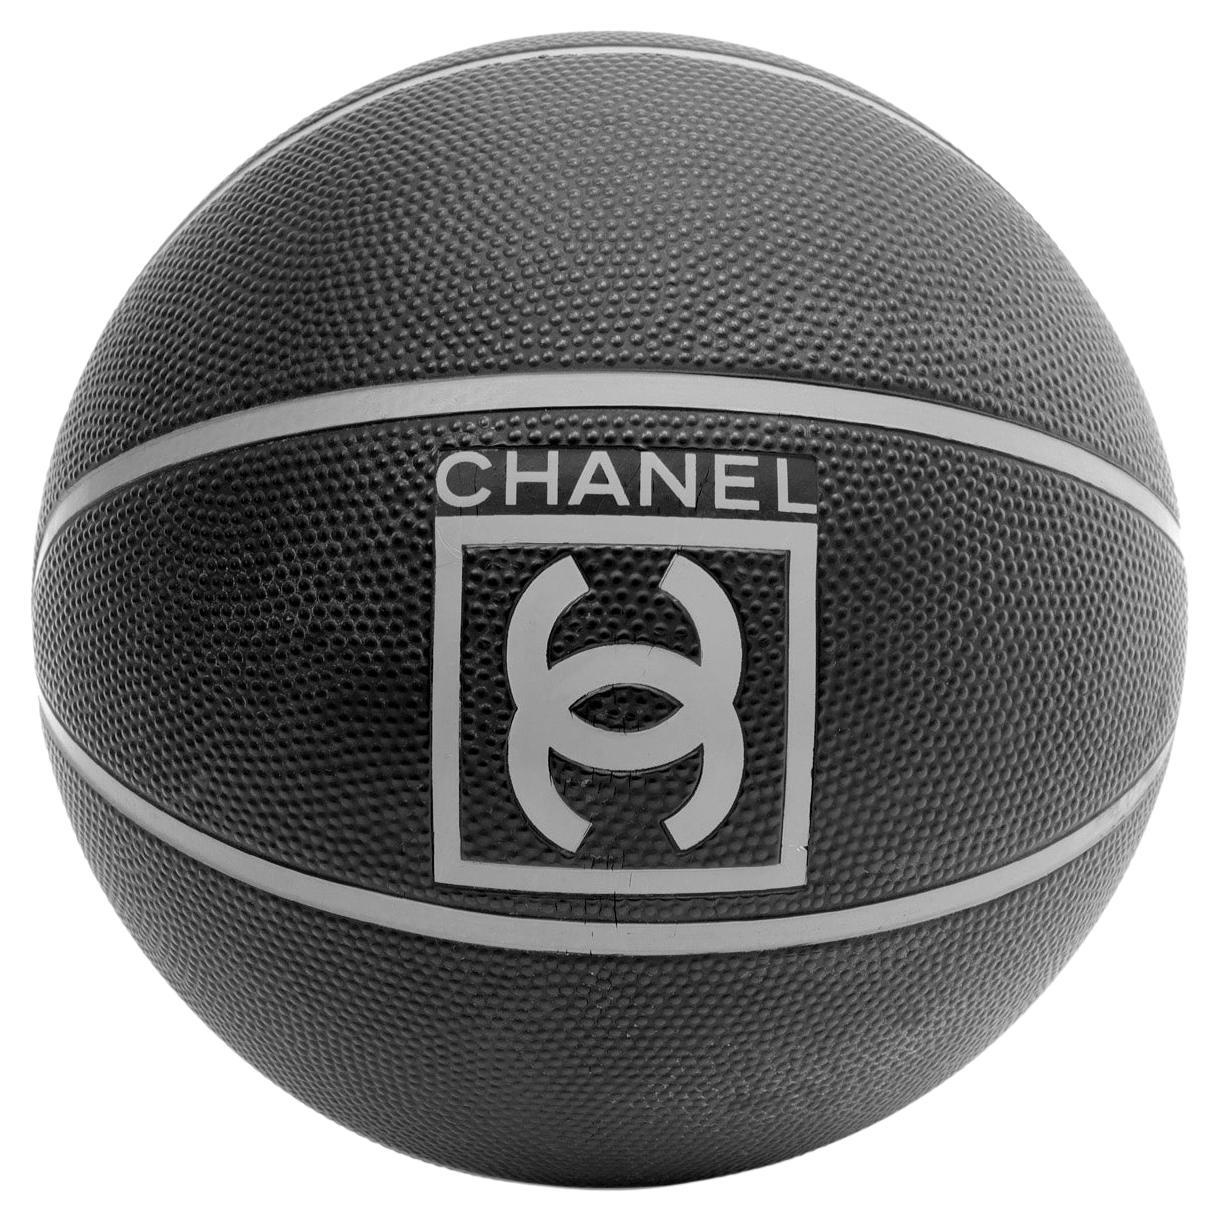 Chanel 2004 Sport Lanyard - Black Keychains, Accessories